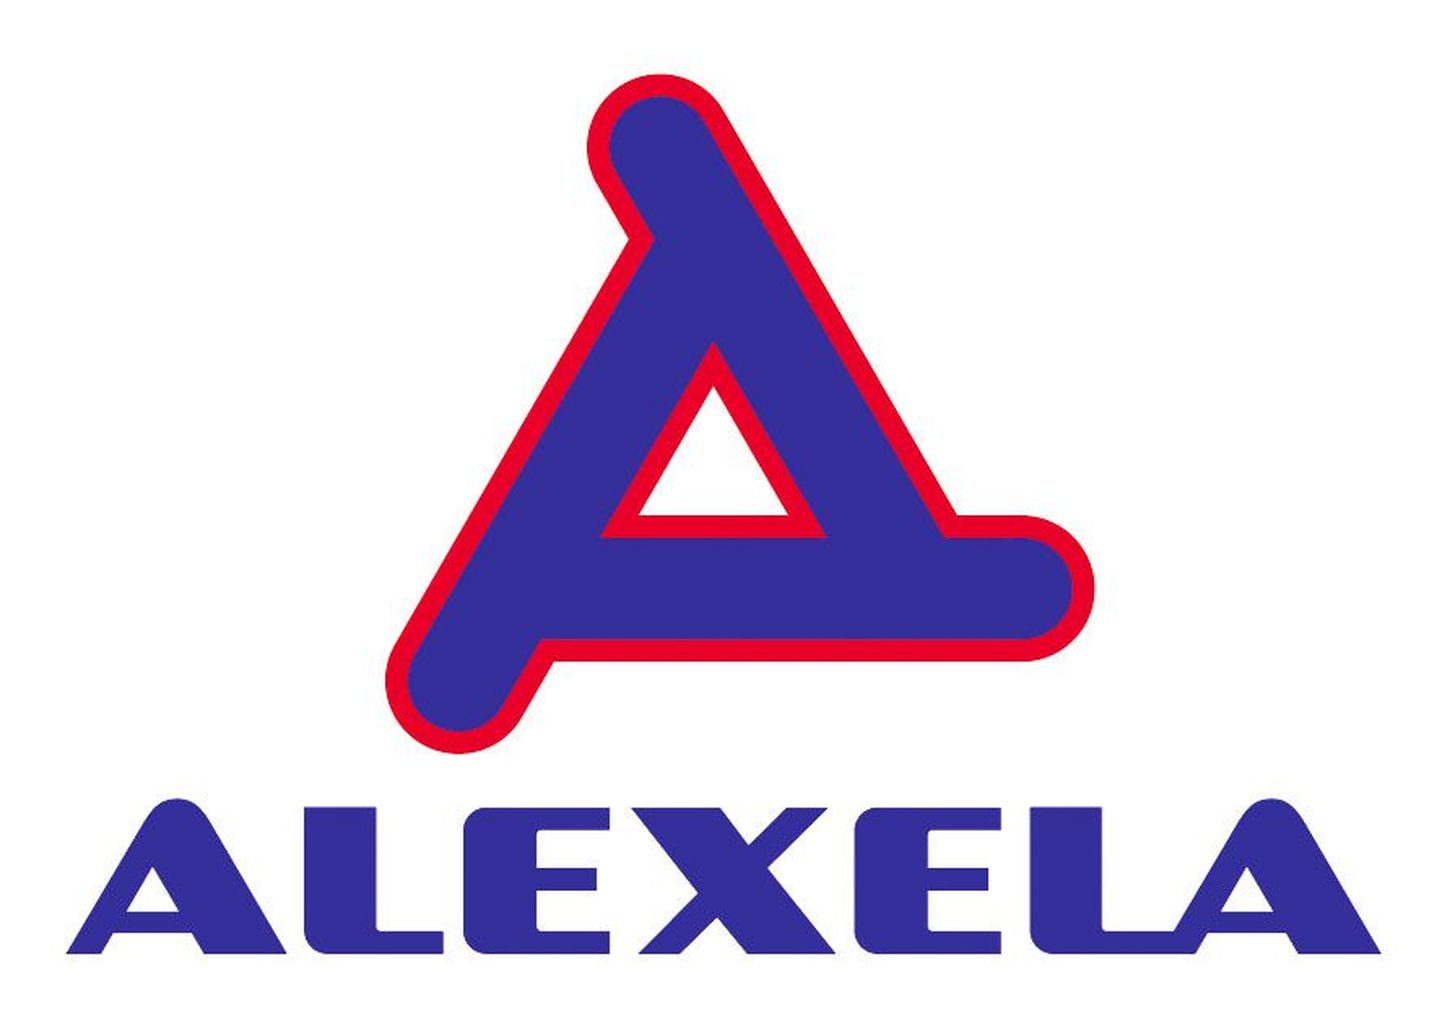 Alexela